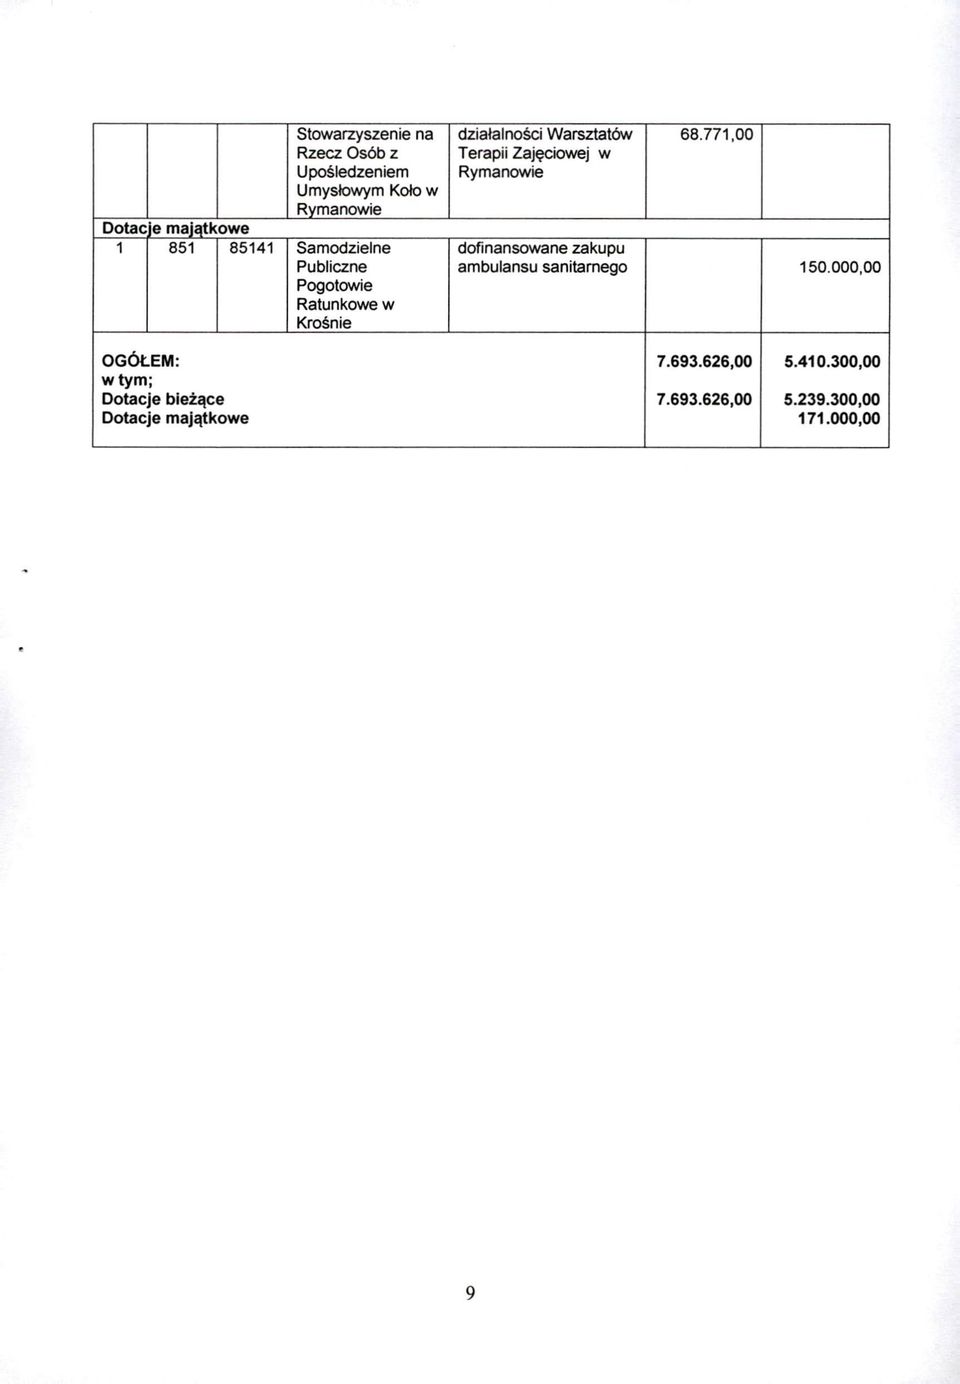 tac e maiatkowe 1 851 85141 Samodzielne dofinansowane zakupu Publiczne ambulansu sanitarnego 150.